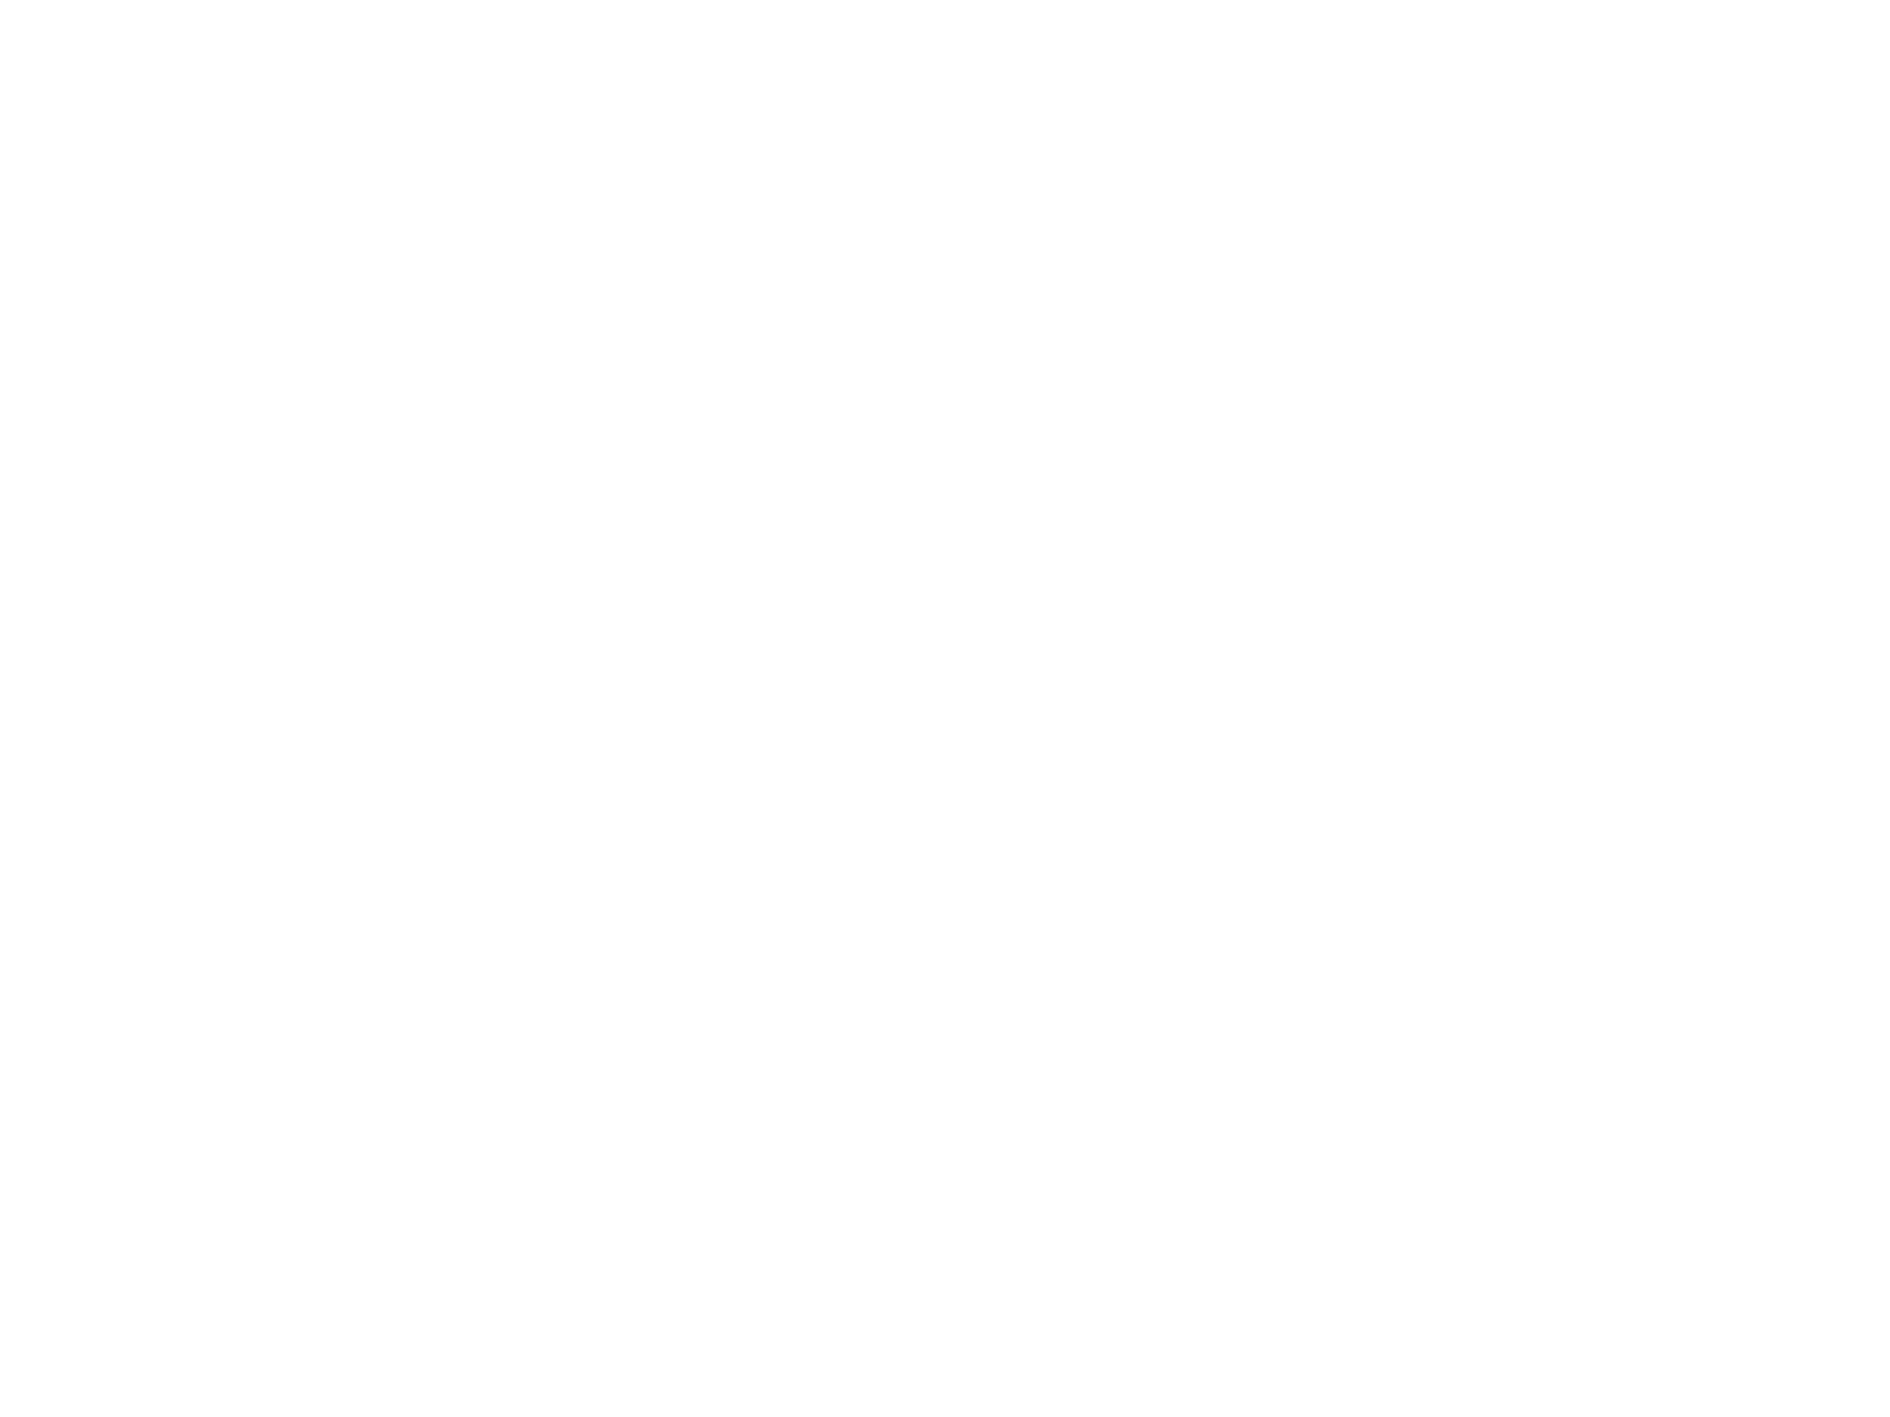 DRVR logo white